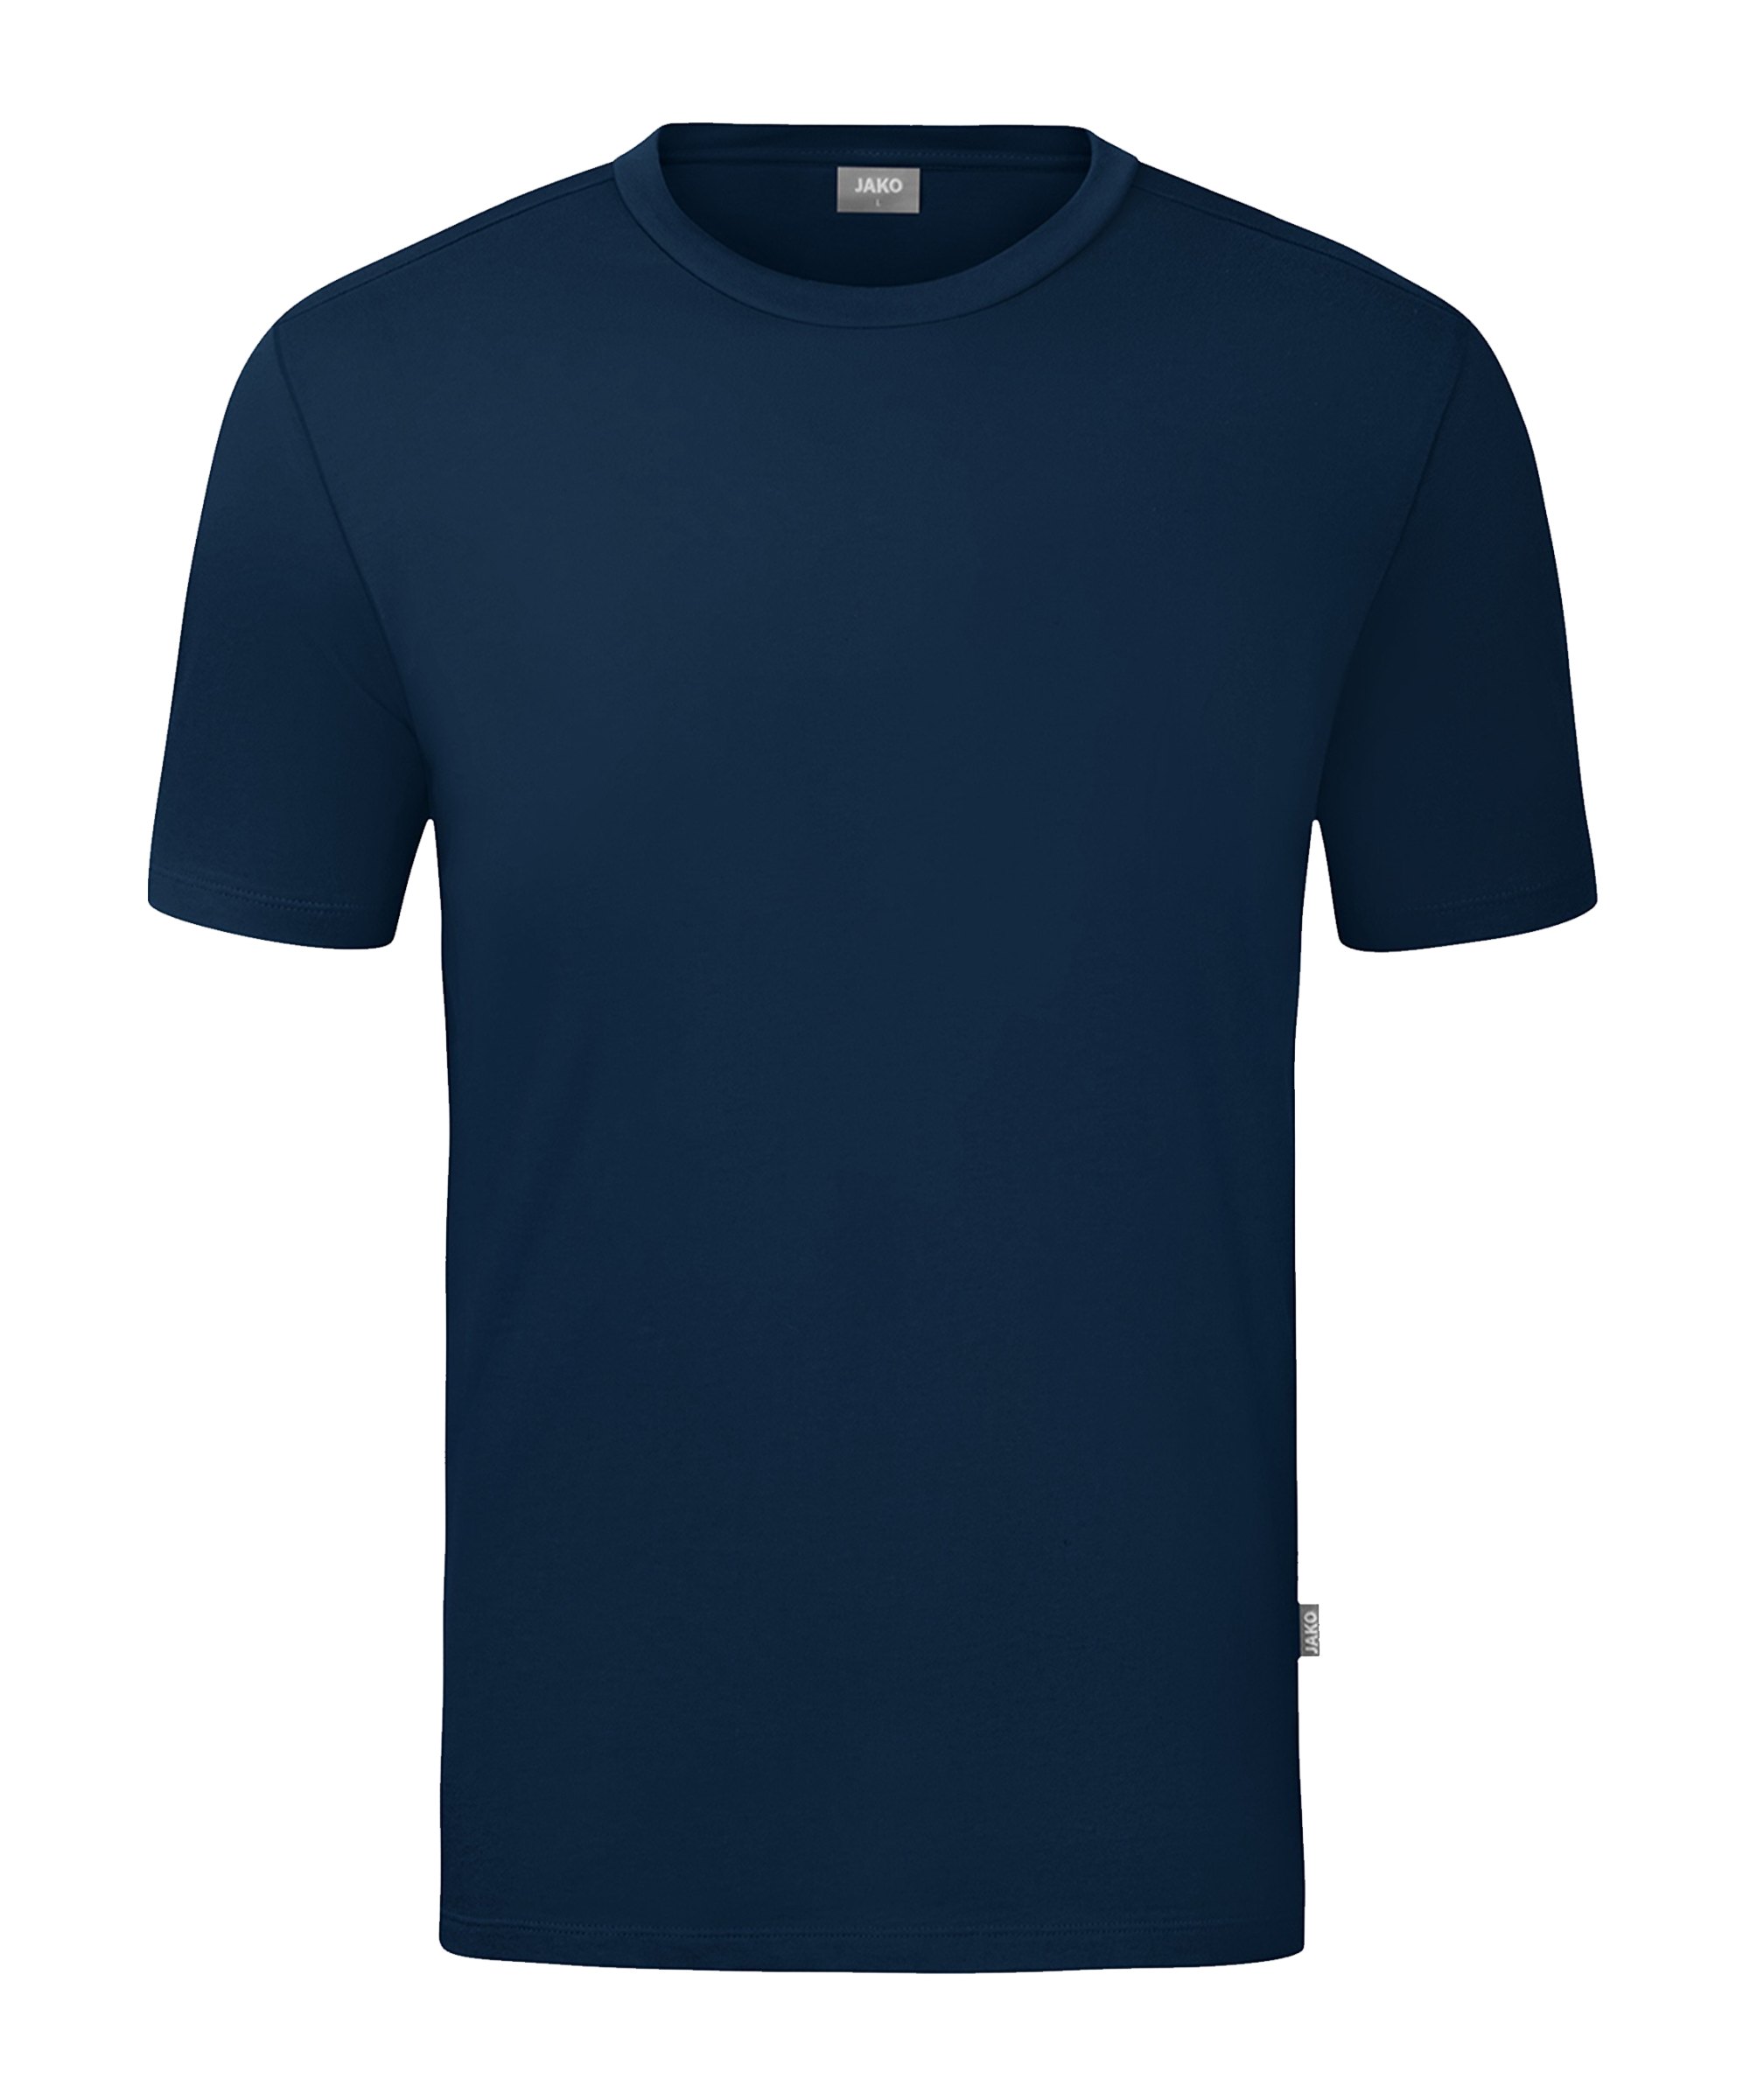 JAKO Organic T-Shirt Kids Blau F900 - blau